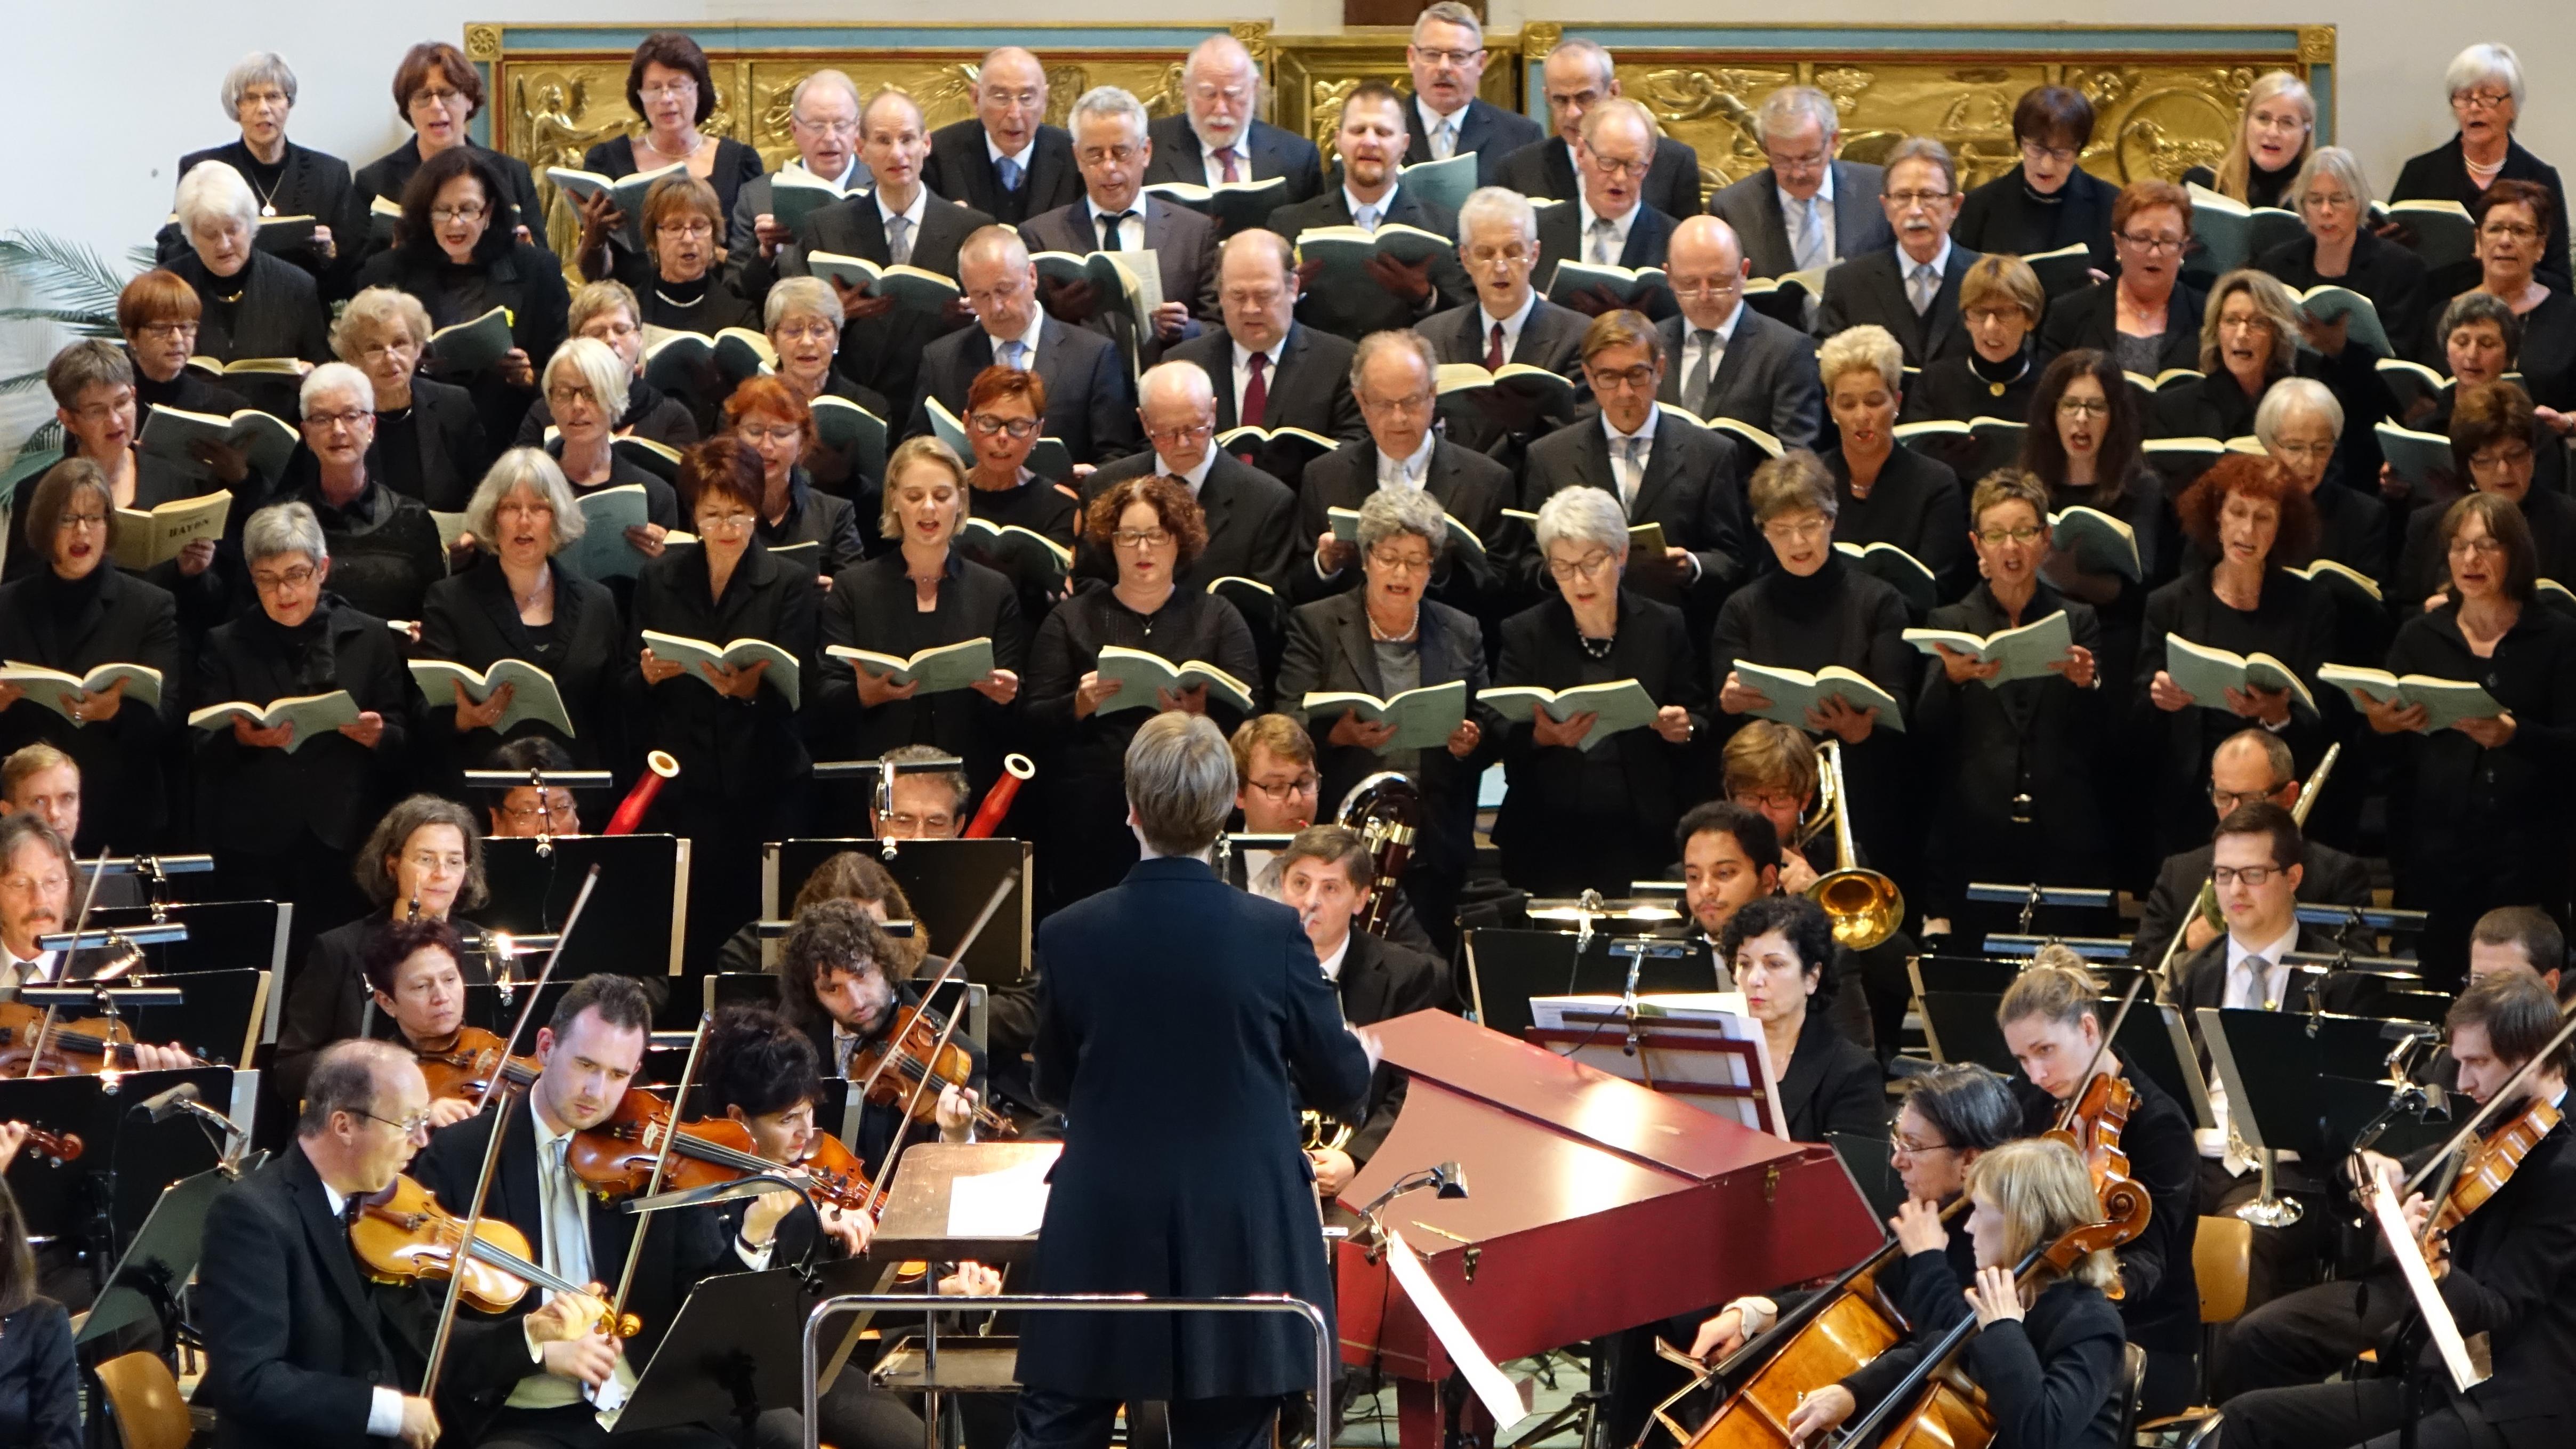 Kantorei präsentiert in der Christuskirche "Die Schöpfung" von Haydn, Foto: 01.10.2017, Eifler